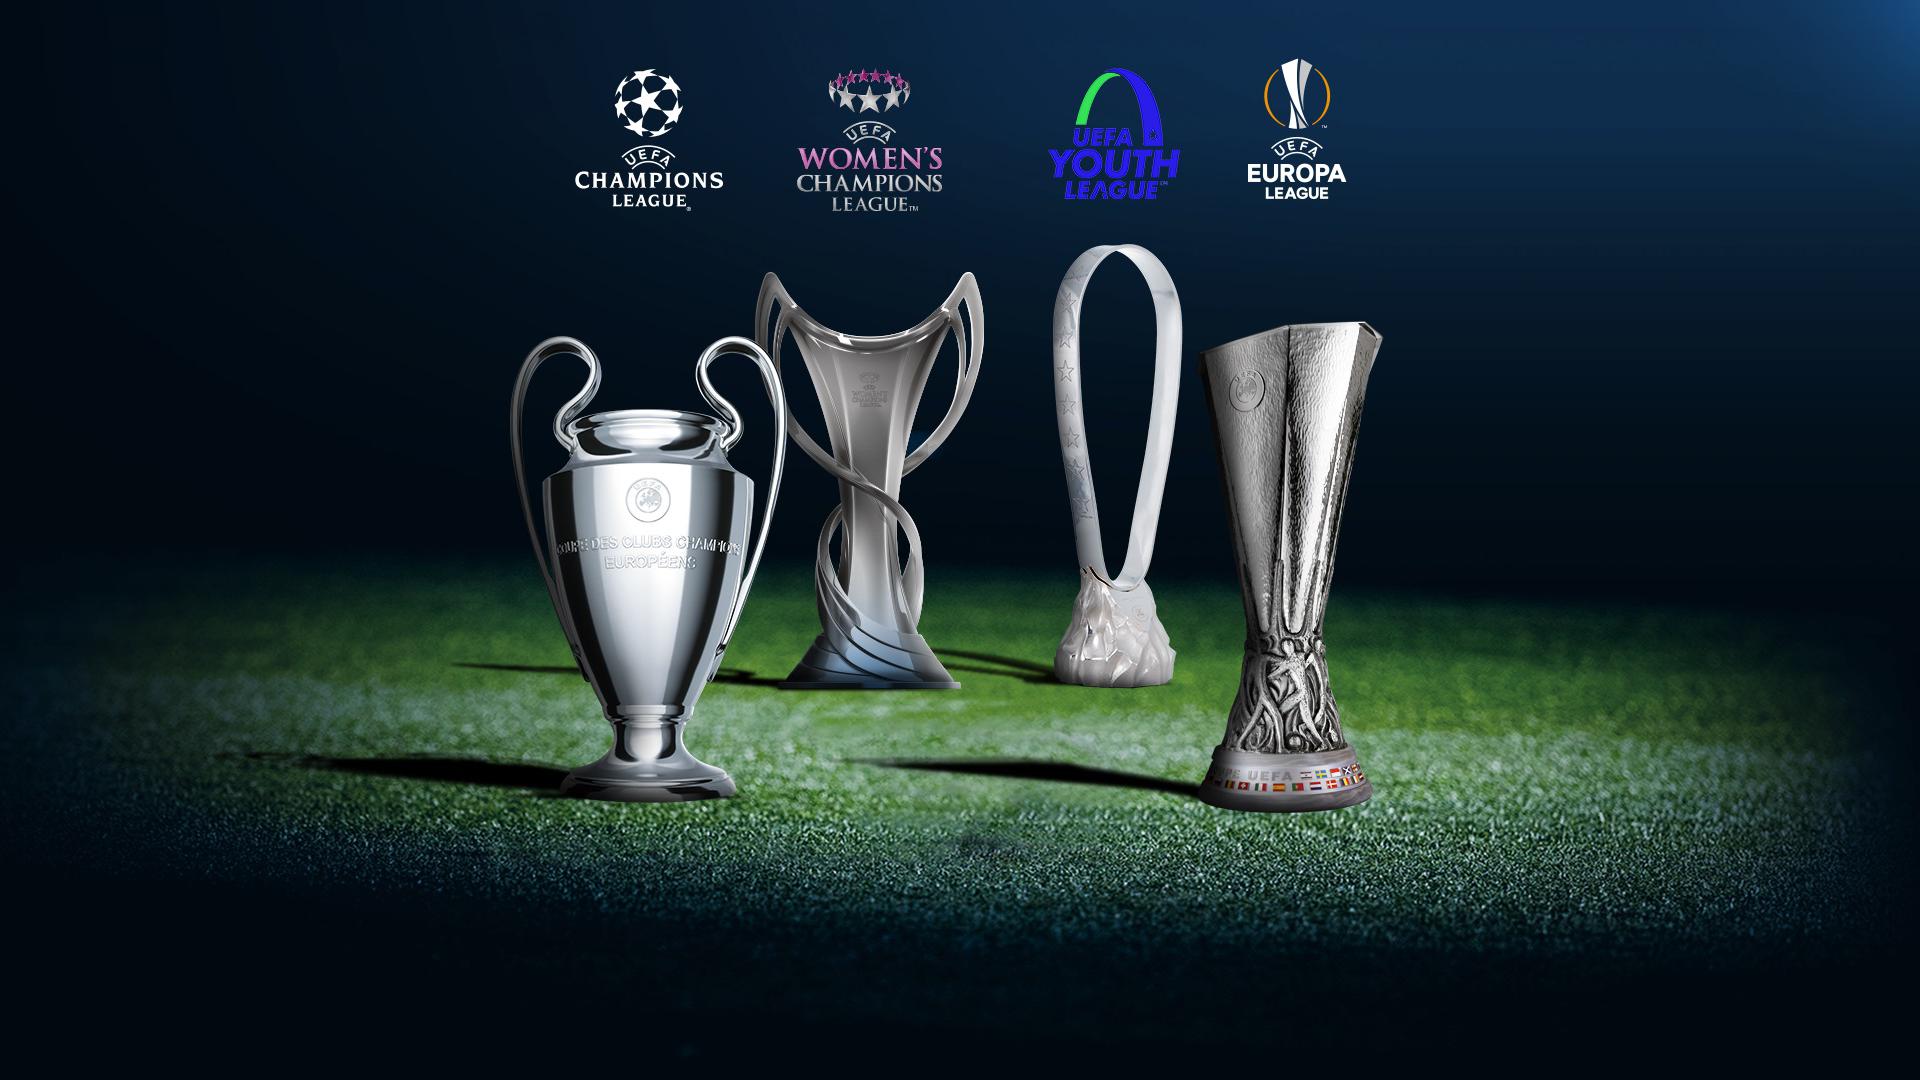 Todos os jogos das Finais da UEFA Champions League, Women's Champions League,  Youth League e eSports